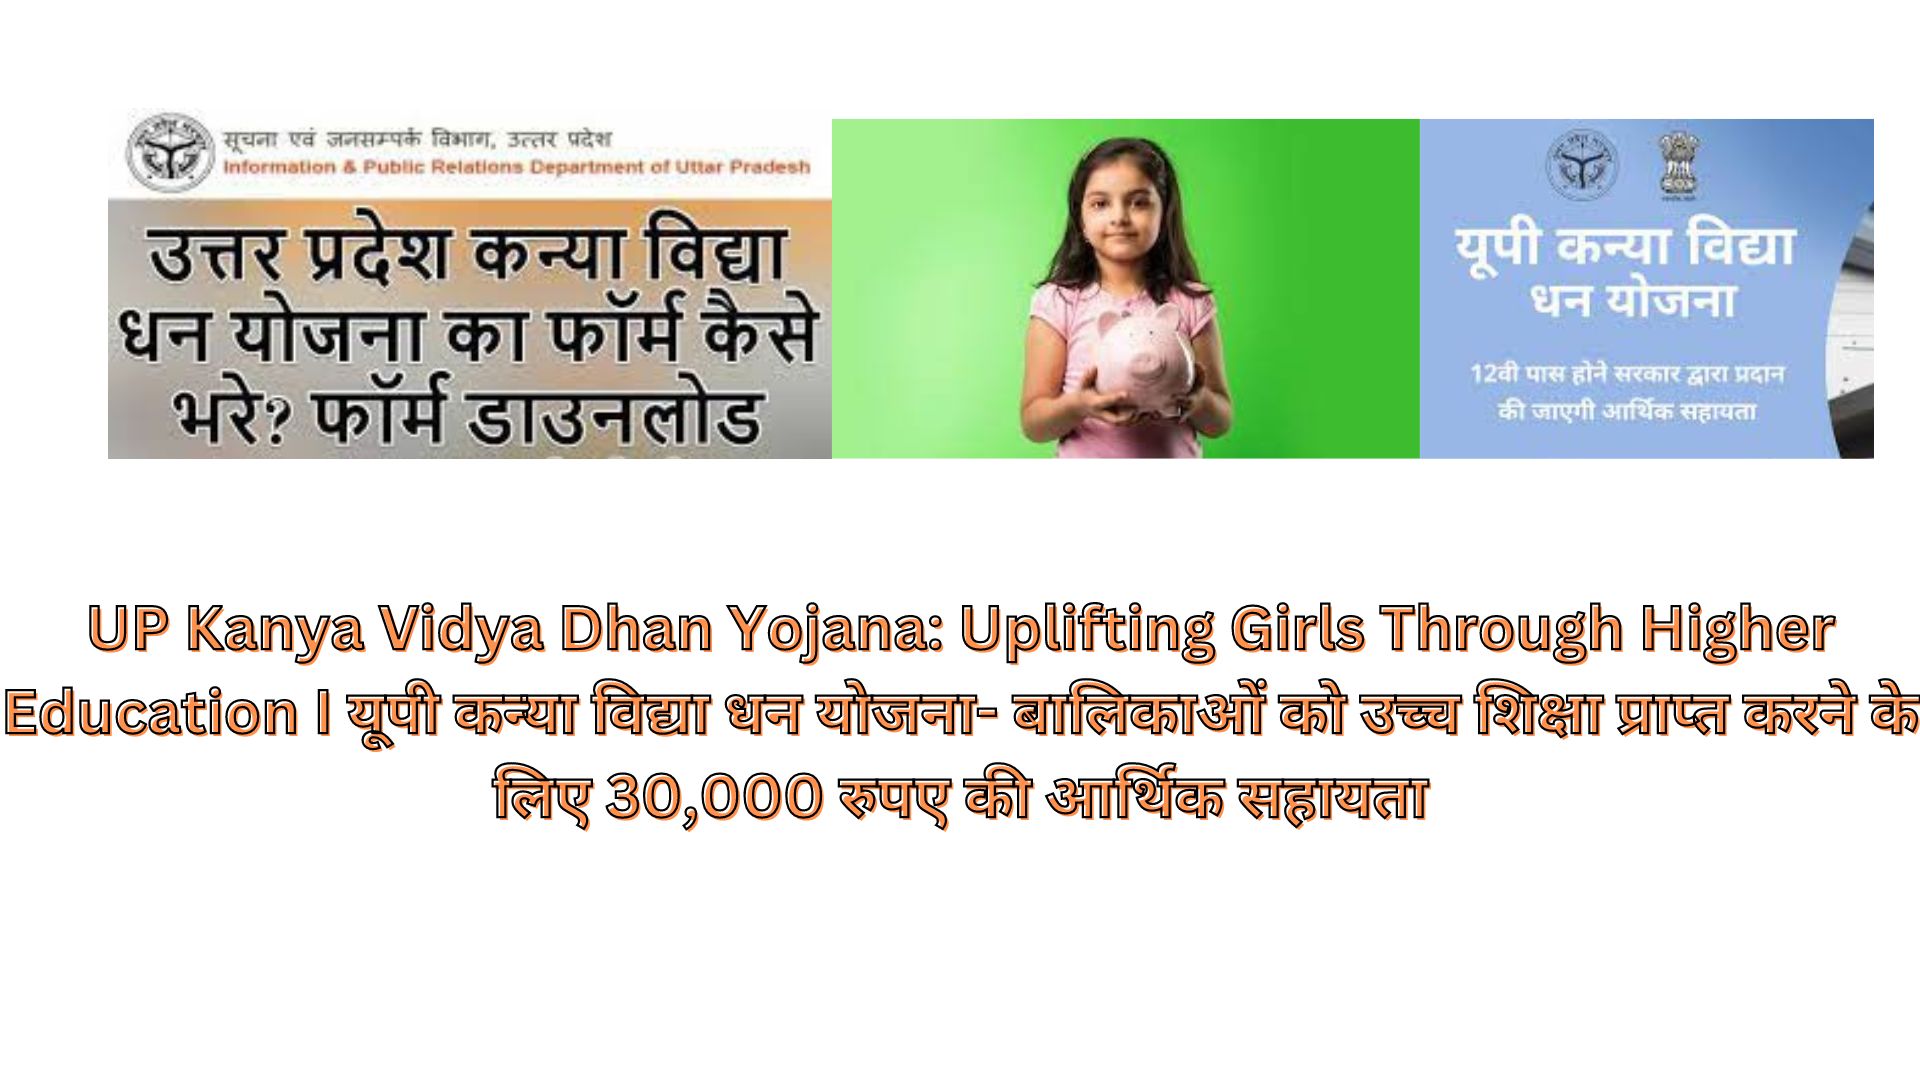 UP Kanya Vidya Dhan Yojana: Uplifting Girls Through Higher Education I यूपी कन्या विद्या धन योजना- बालिकाओं को उच्च शिक्षा प्राप्त करने के लिए 30,000 रुपए की आर्थिक सहायता